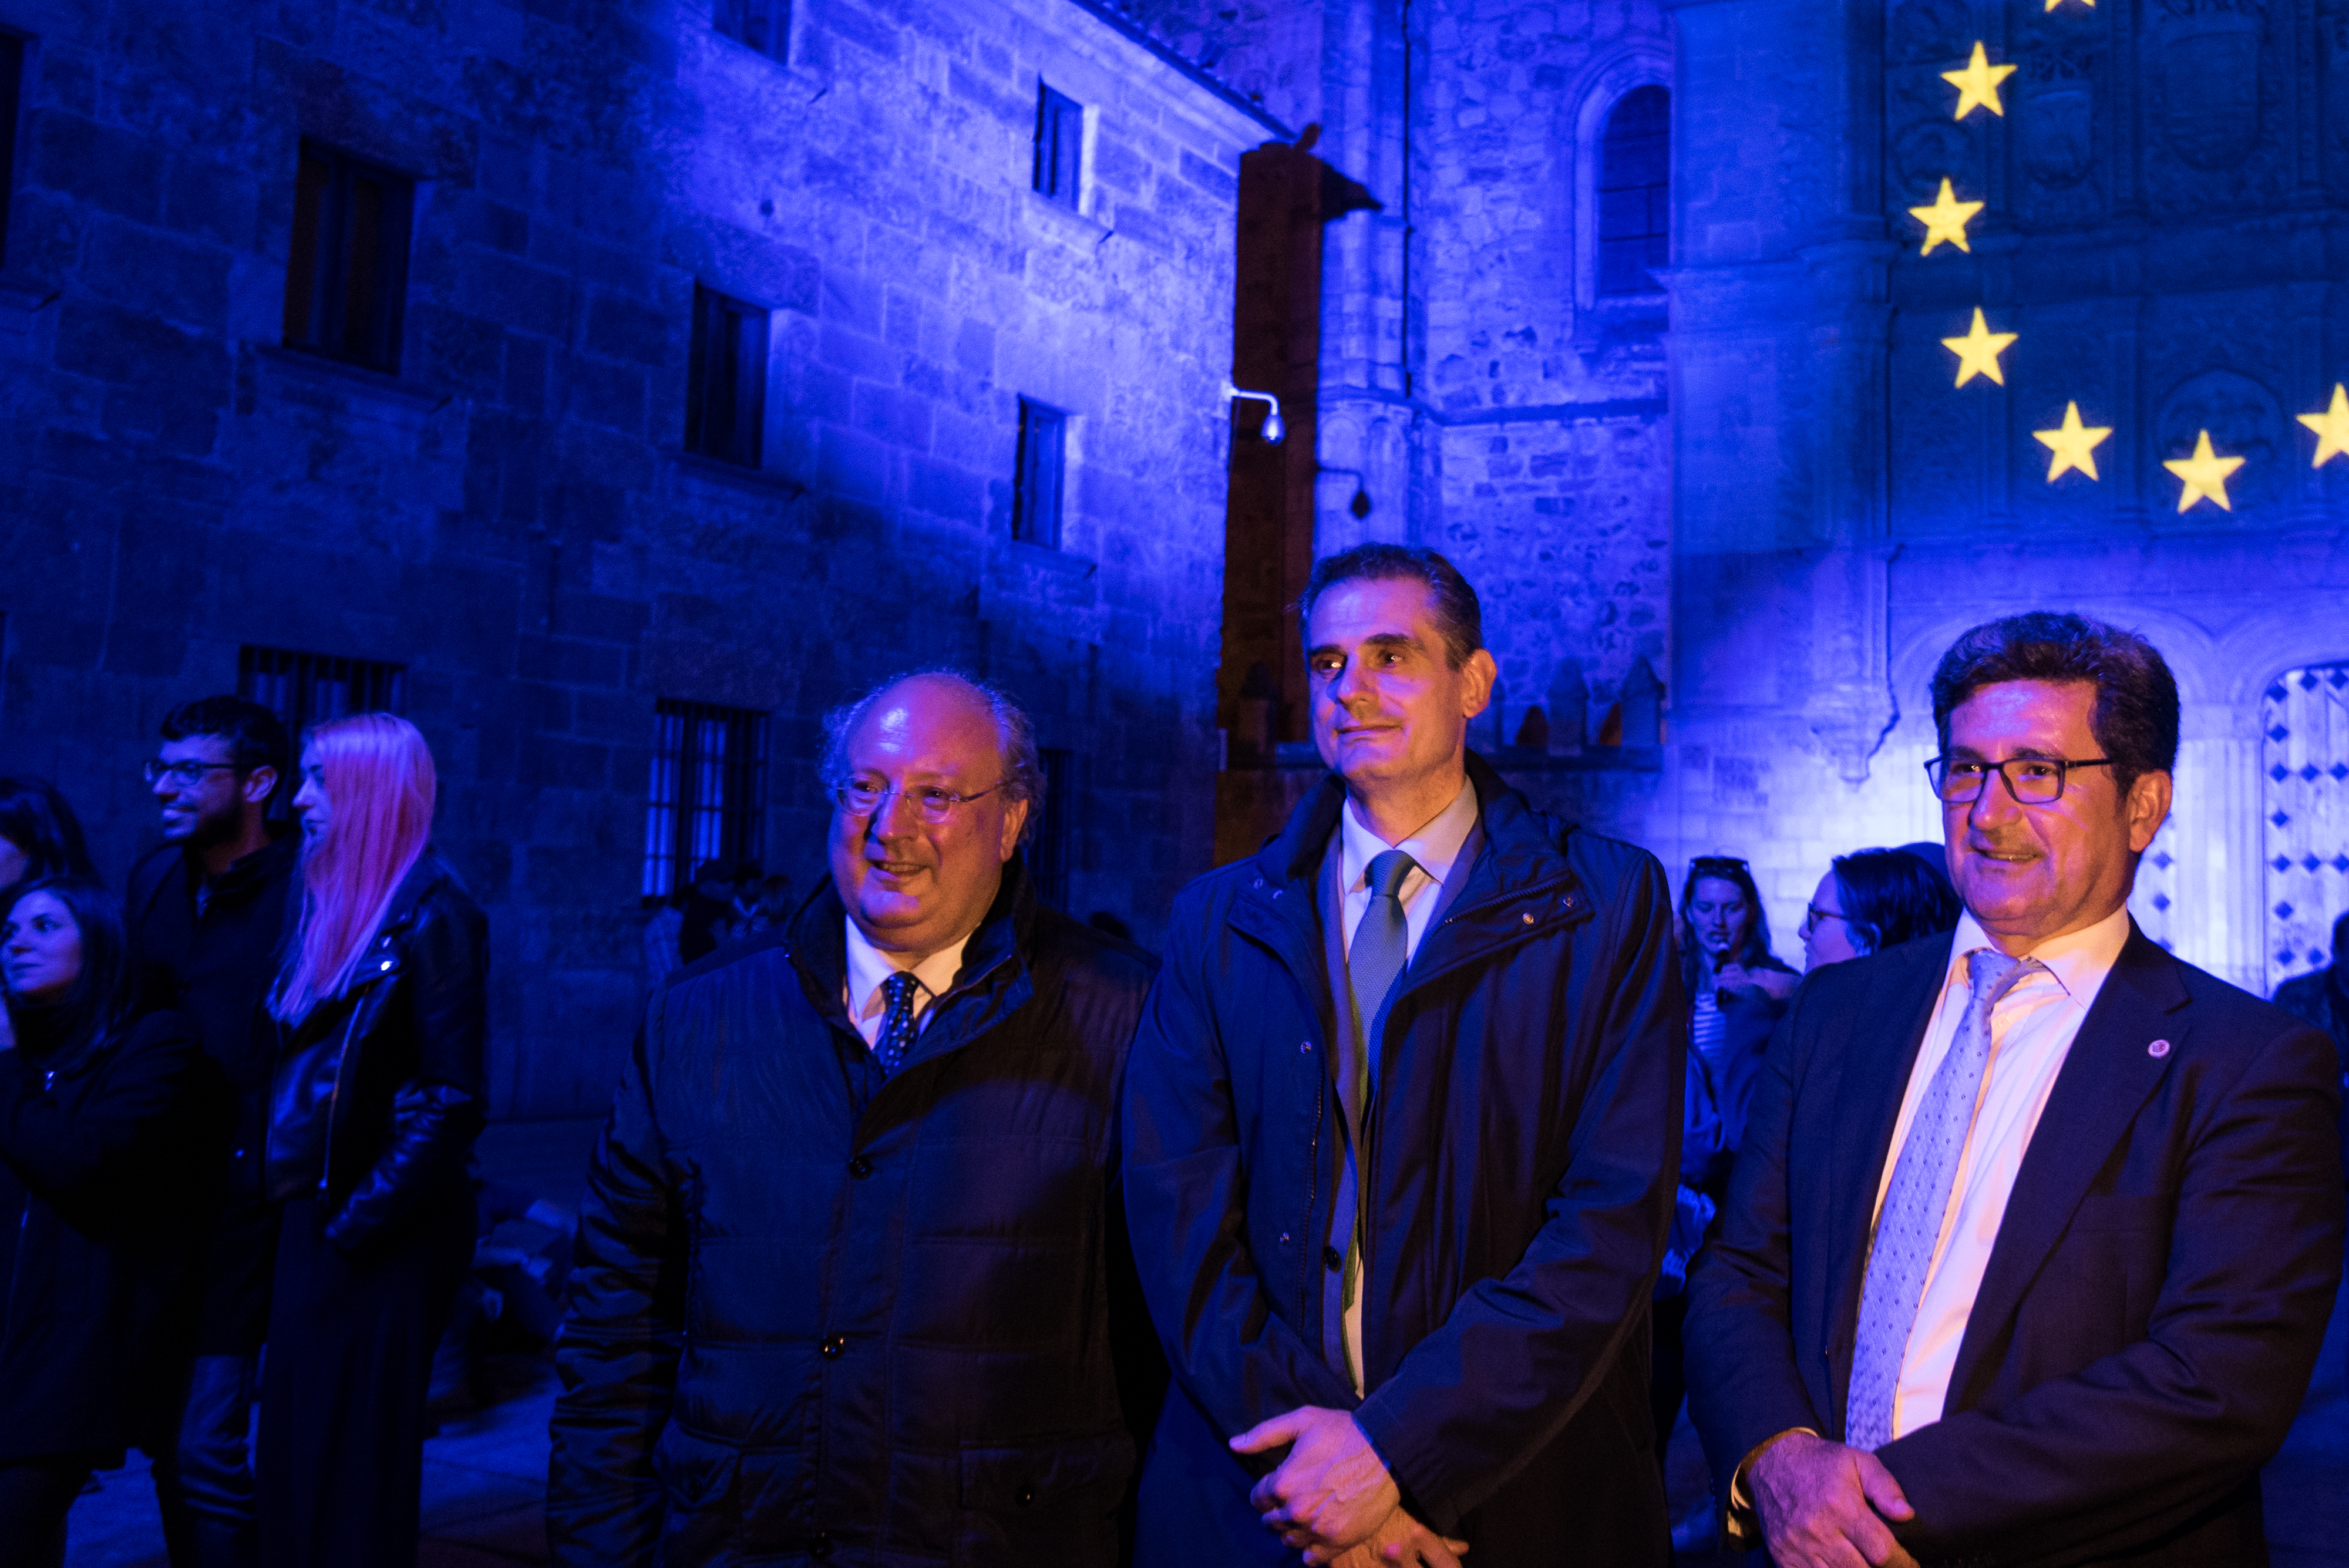 La Universidad de Salamanca ilumina y proyecta la bandera de la UE en su fachada rica para conmemorar el Día de Europa